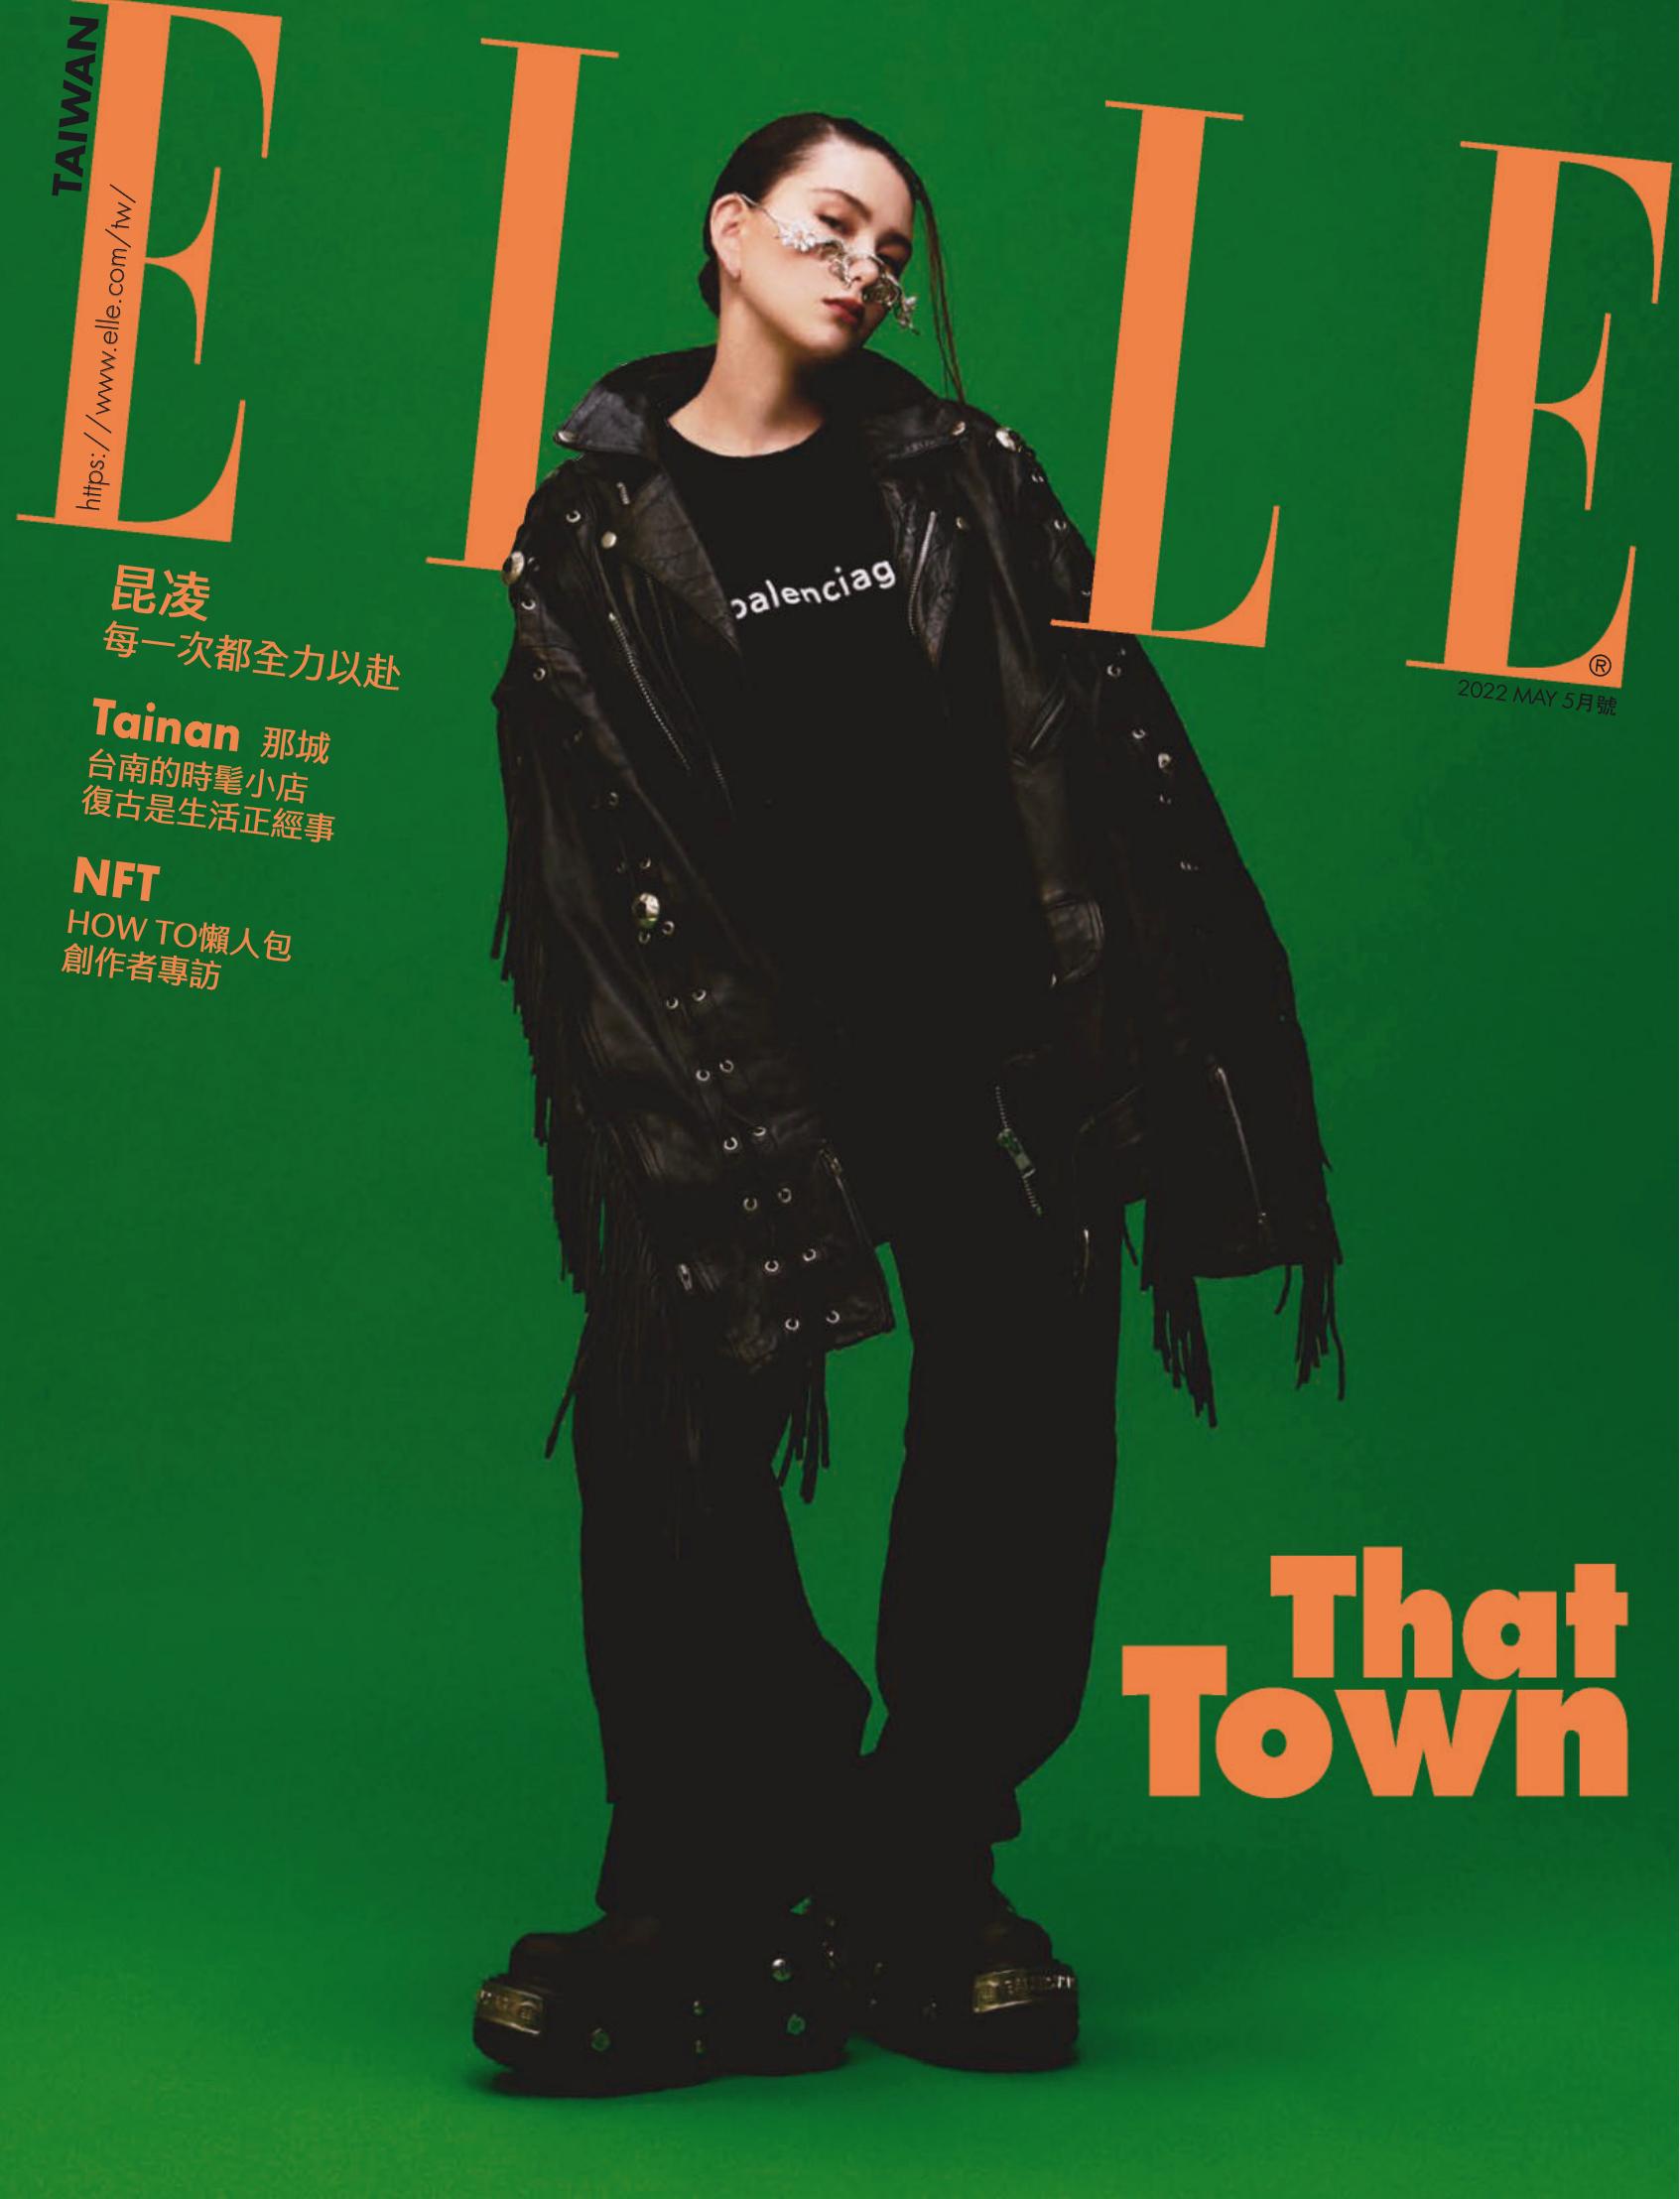 中国台湾女性时尚杂志订阅《ELLE 她杂志》电子版PDF高清【2022年全年订阅】